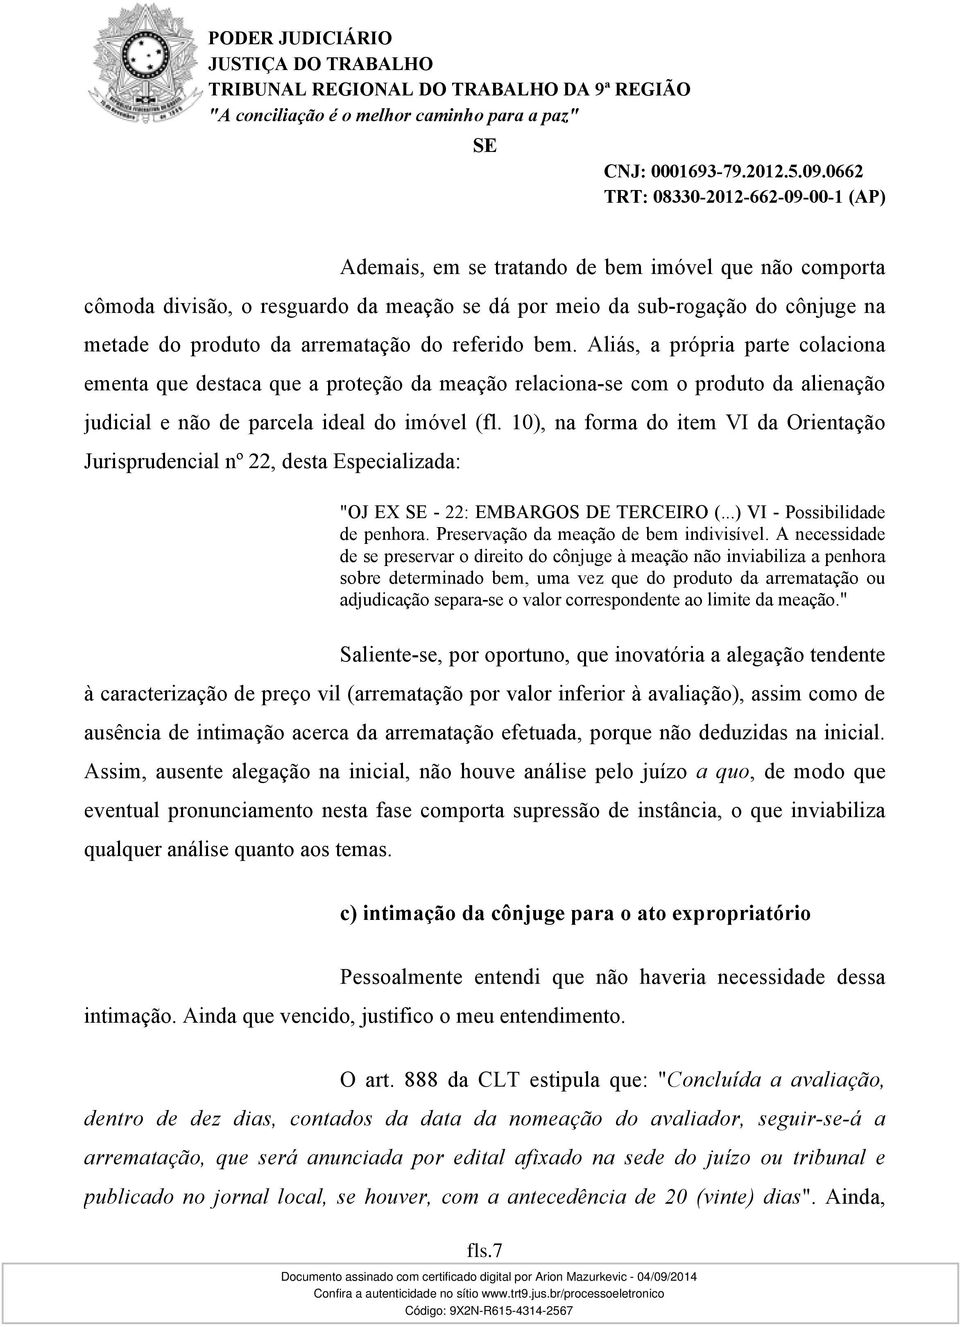 10), na forma do item VI da Orientação Jurisprudencial nº 22, desta Especializada: "OJ EX - 22: EMBARGOS DE TERCEIRO (...) VI - Possibilidade de penhora. Preservação da meação de bem indivisível.